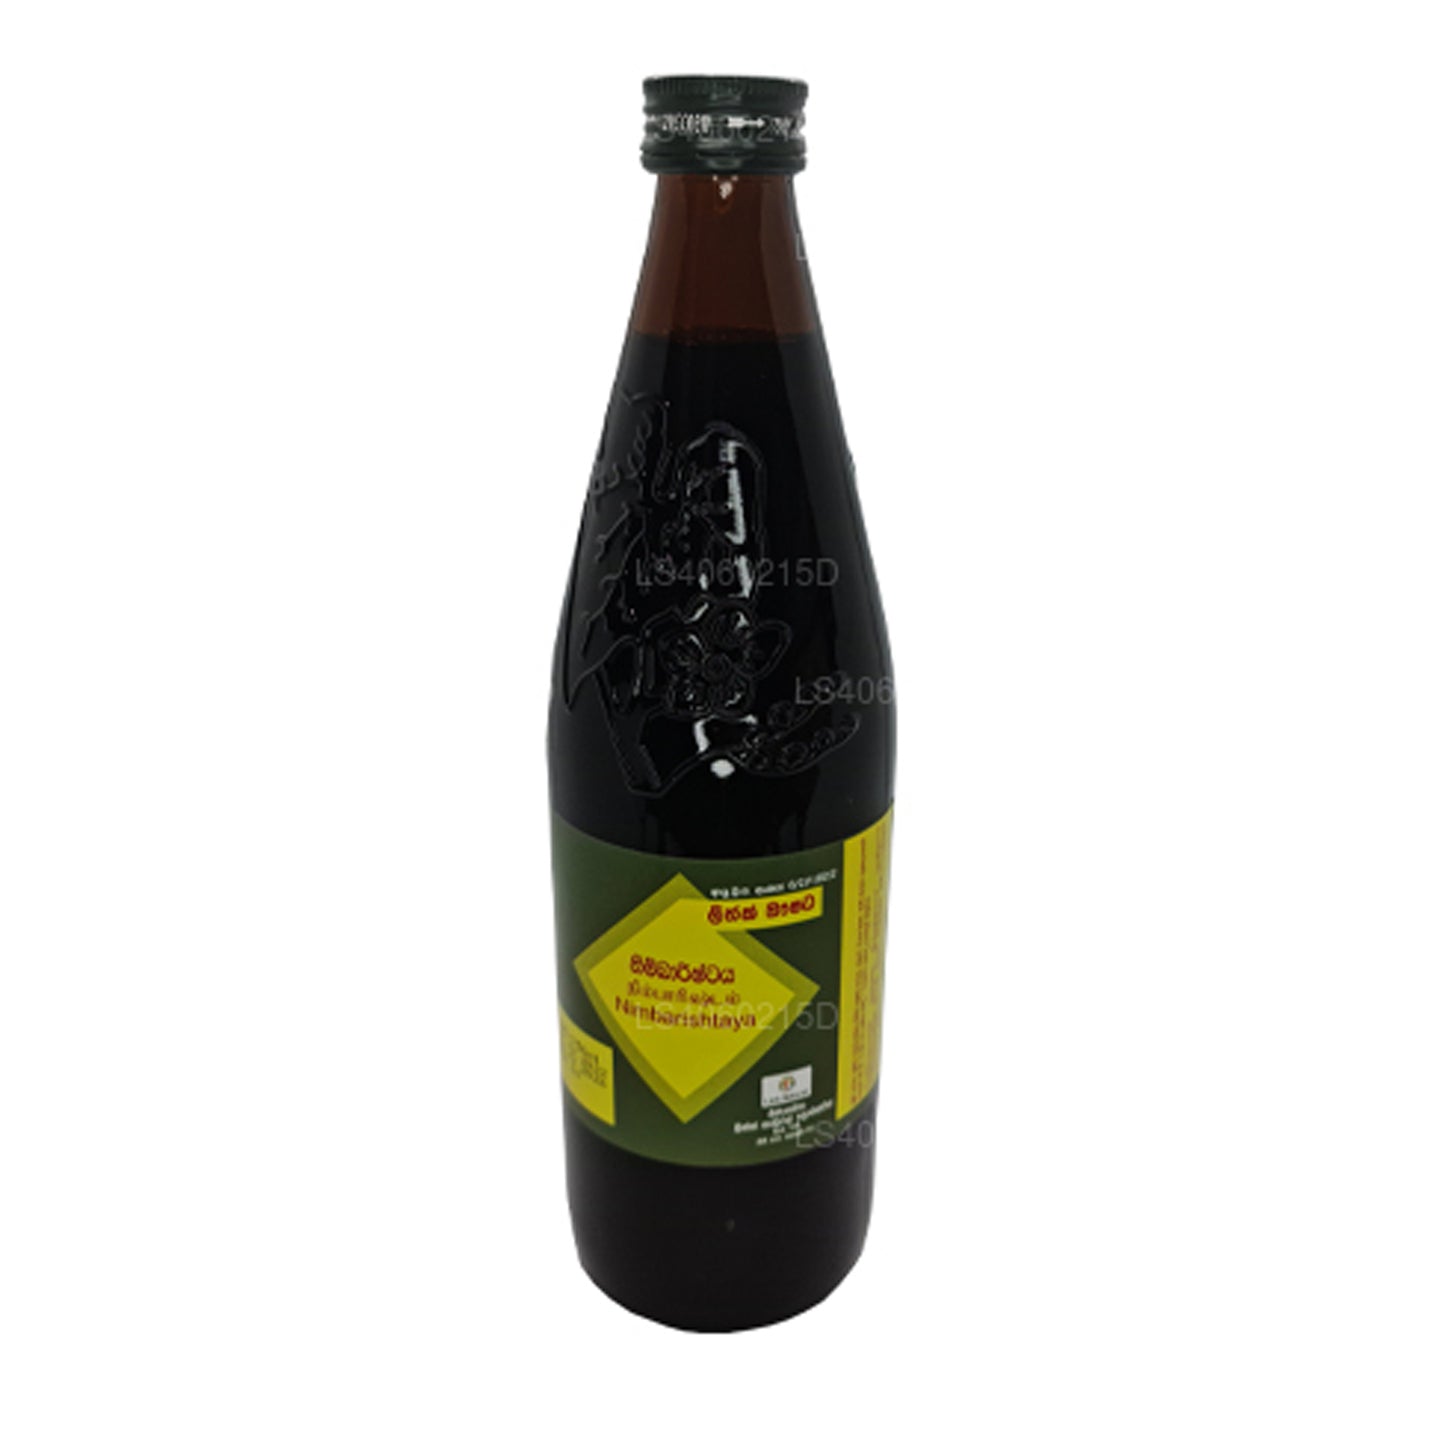 Link Nimbarishtaya (750 ml)